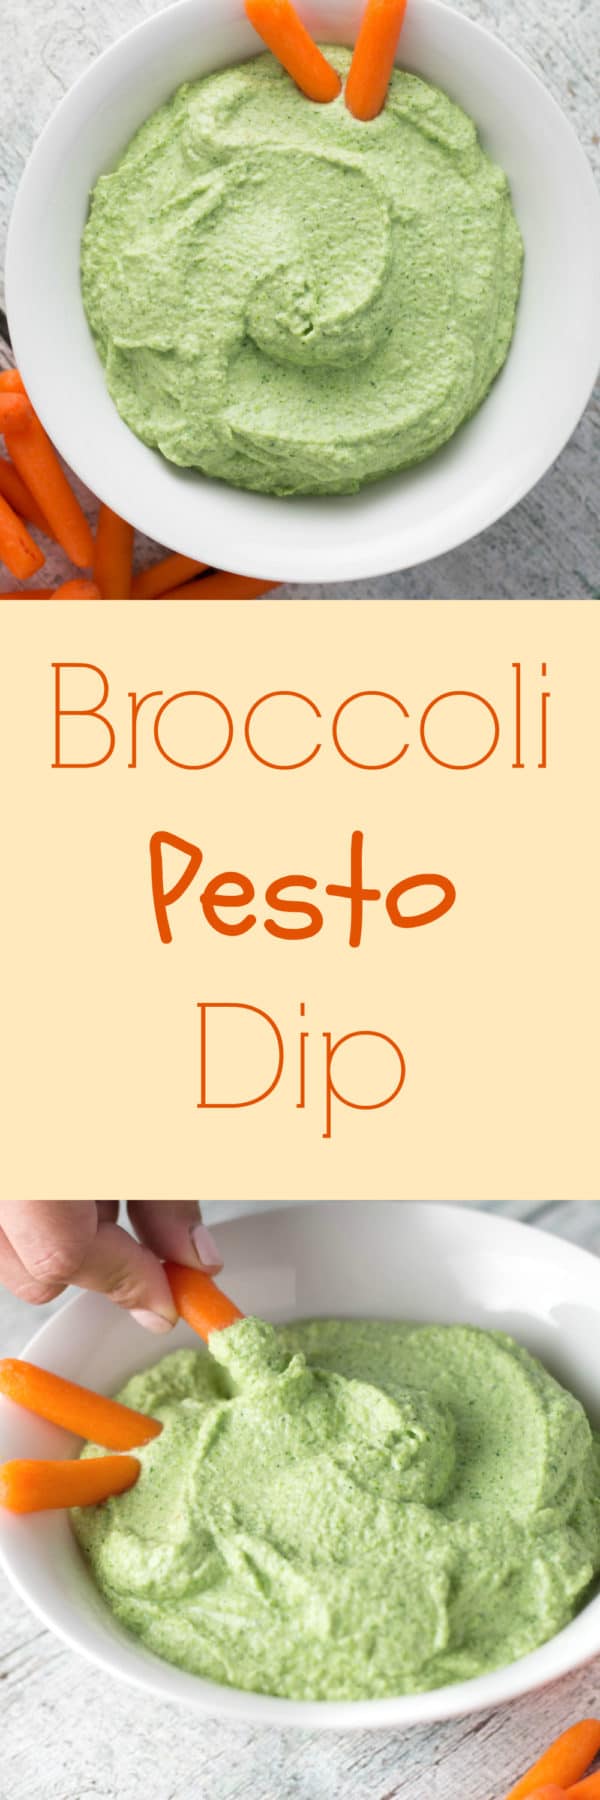 Broccoli Pesto Dip for the win! |Krollskorner.com